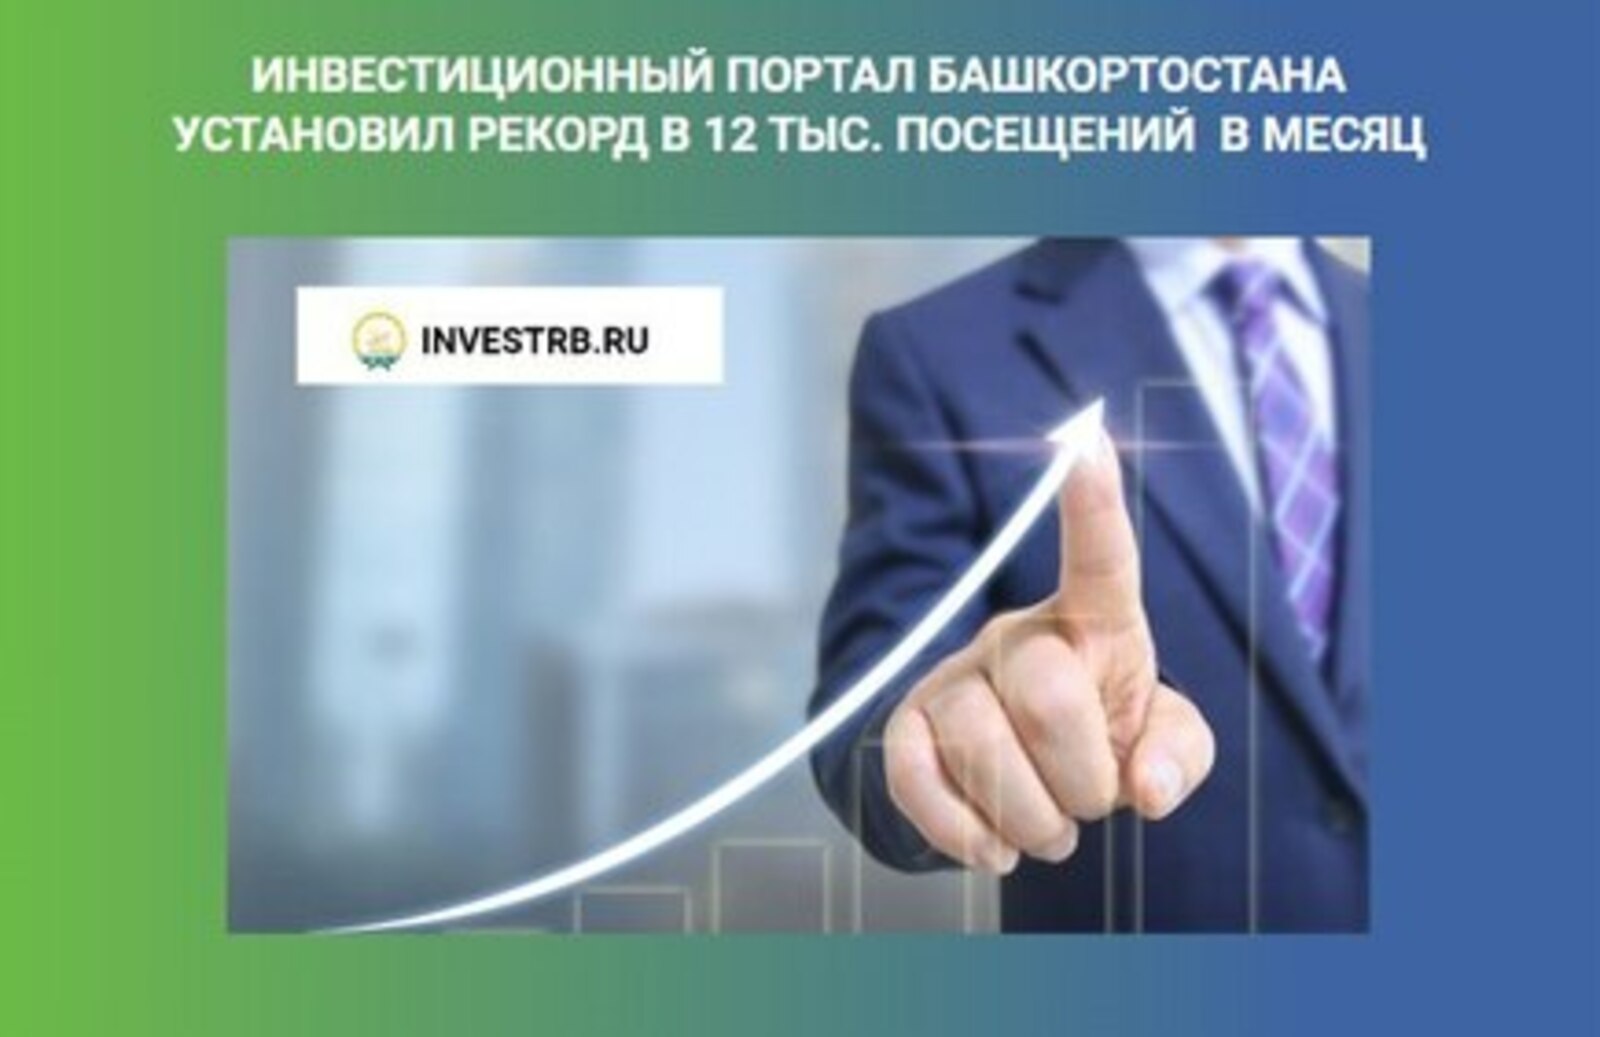 Инвестиционный портал Башкортостана установил рекорд в 12 тысяч посещений в месяц